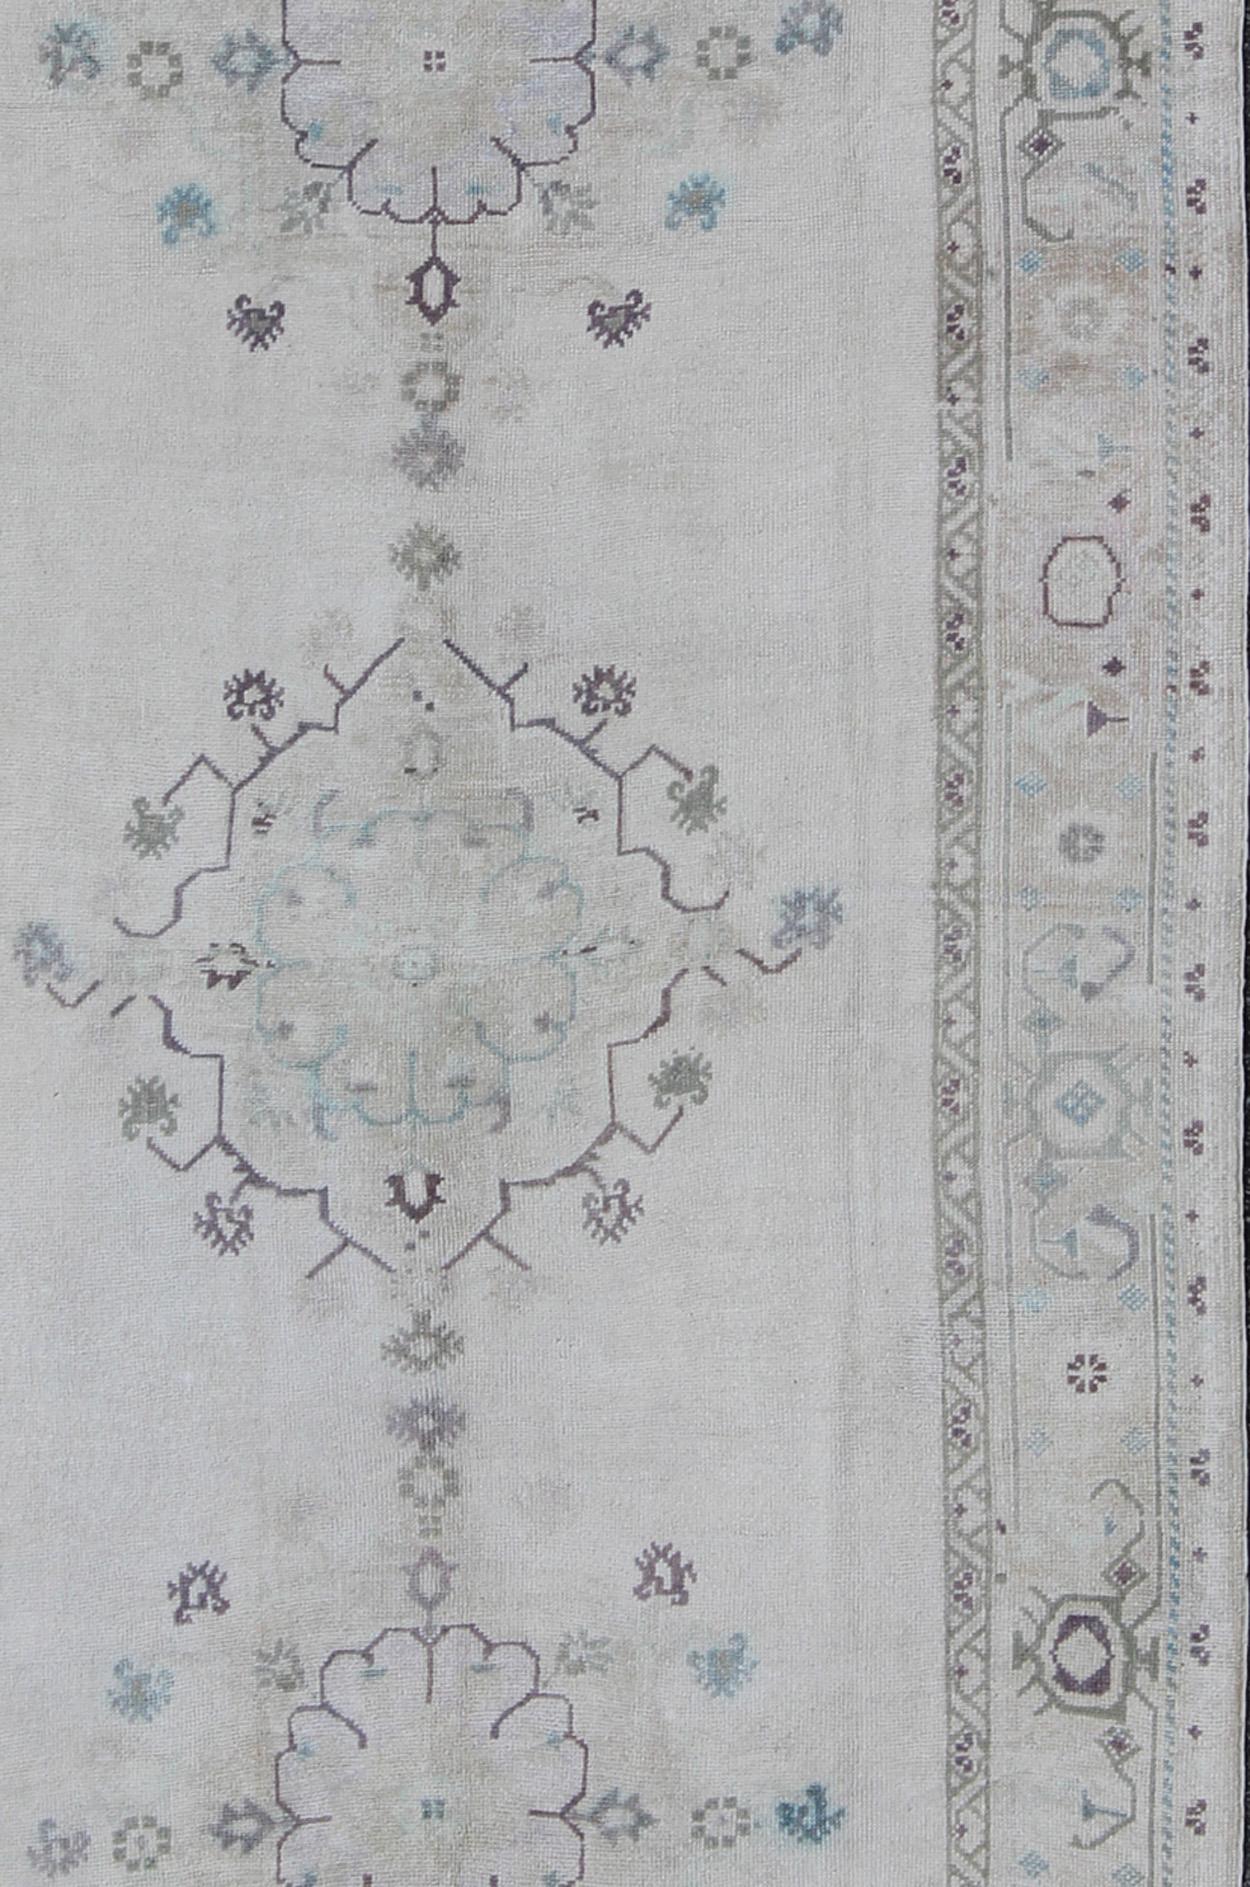 Vieux tapis galerie Oushak de Turquie avec des motifs de fleurs, tapis EN-142397, pays d'origine / type : Turquie / Oushak, circa 1940

Ce tapis Oushak vintage du milieu du 20e siècle en Turquie présente un motif de fleurs stylisées qui s'étend